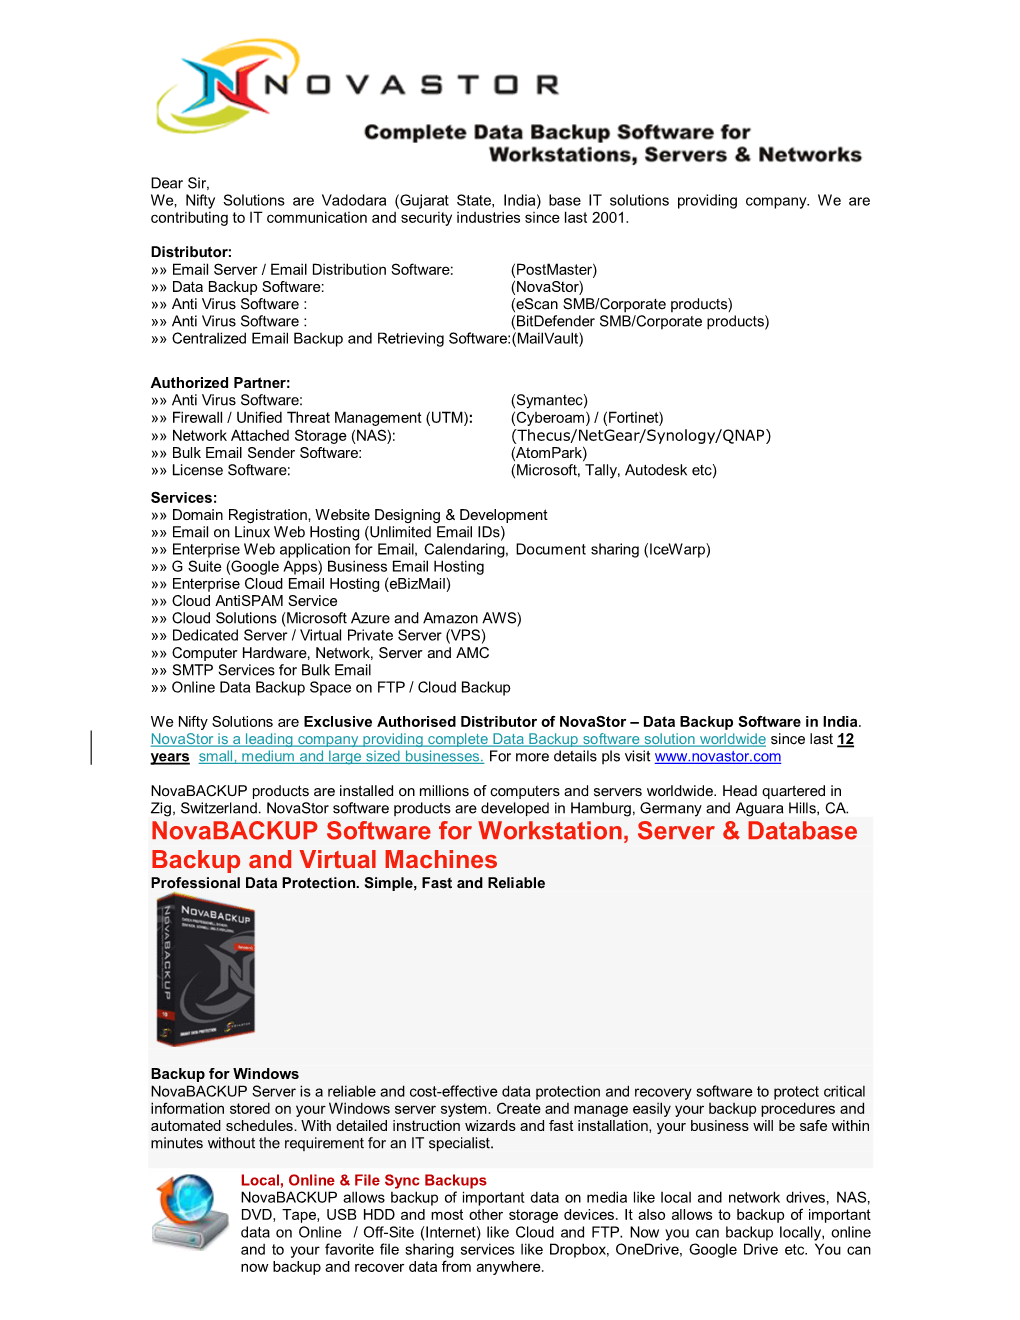 Novabackup Software for Workstation, Server & Database